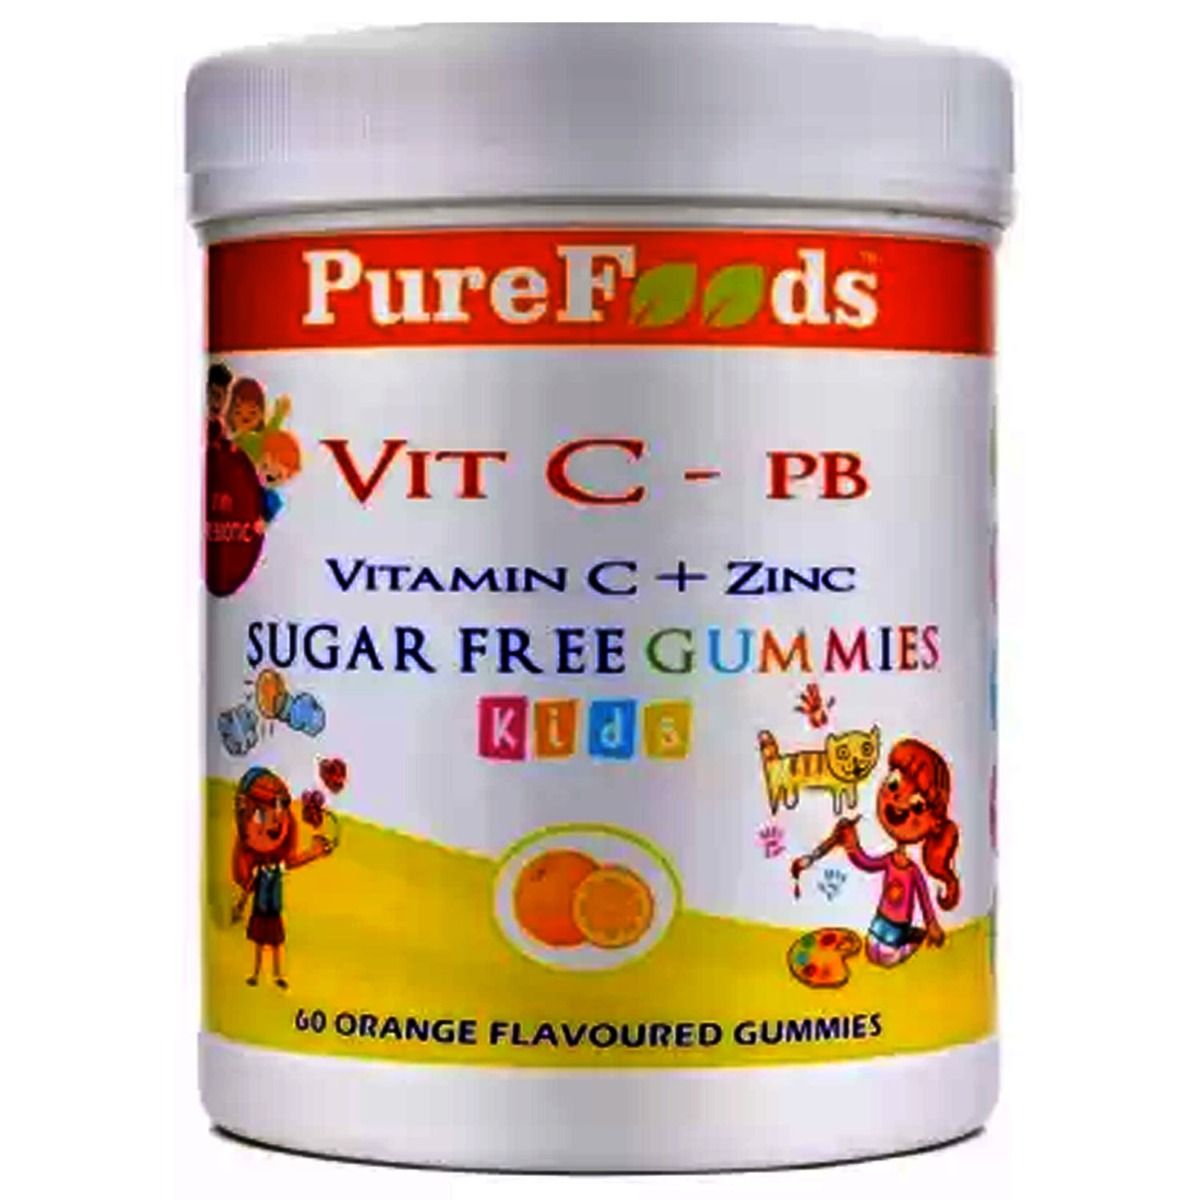 Buy Pure Foods Kids Vitamin C + Zinc Orange Flavoured Gummies, 60 Count Online